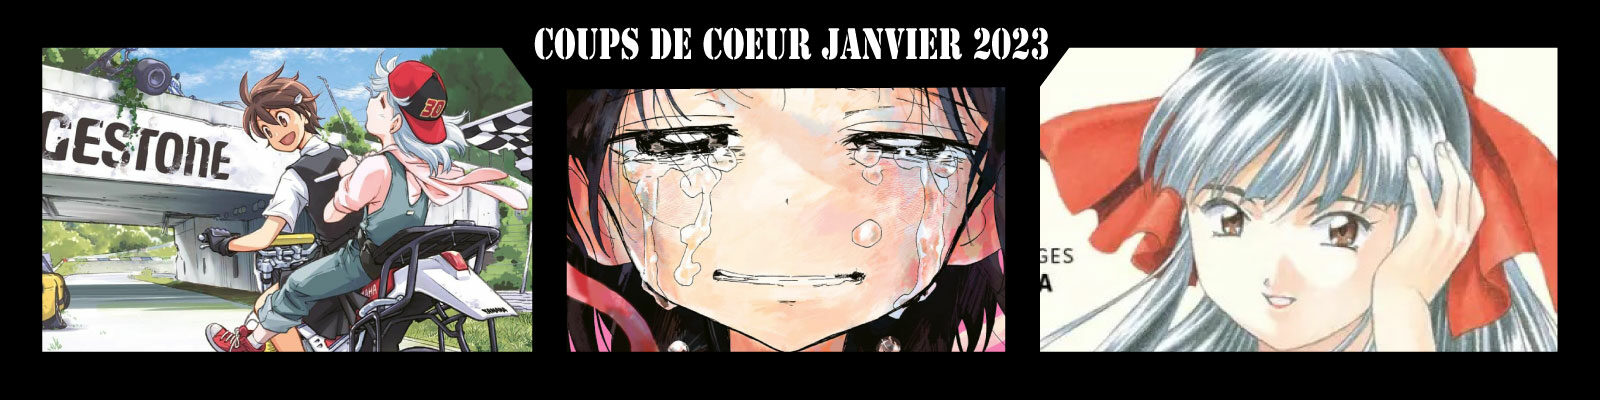 Coups-de-coeur-janvier 2023